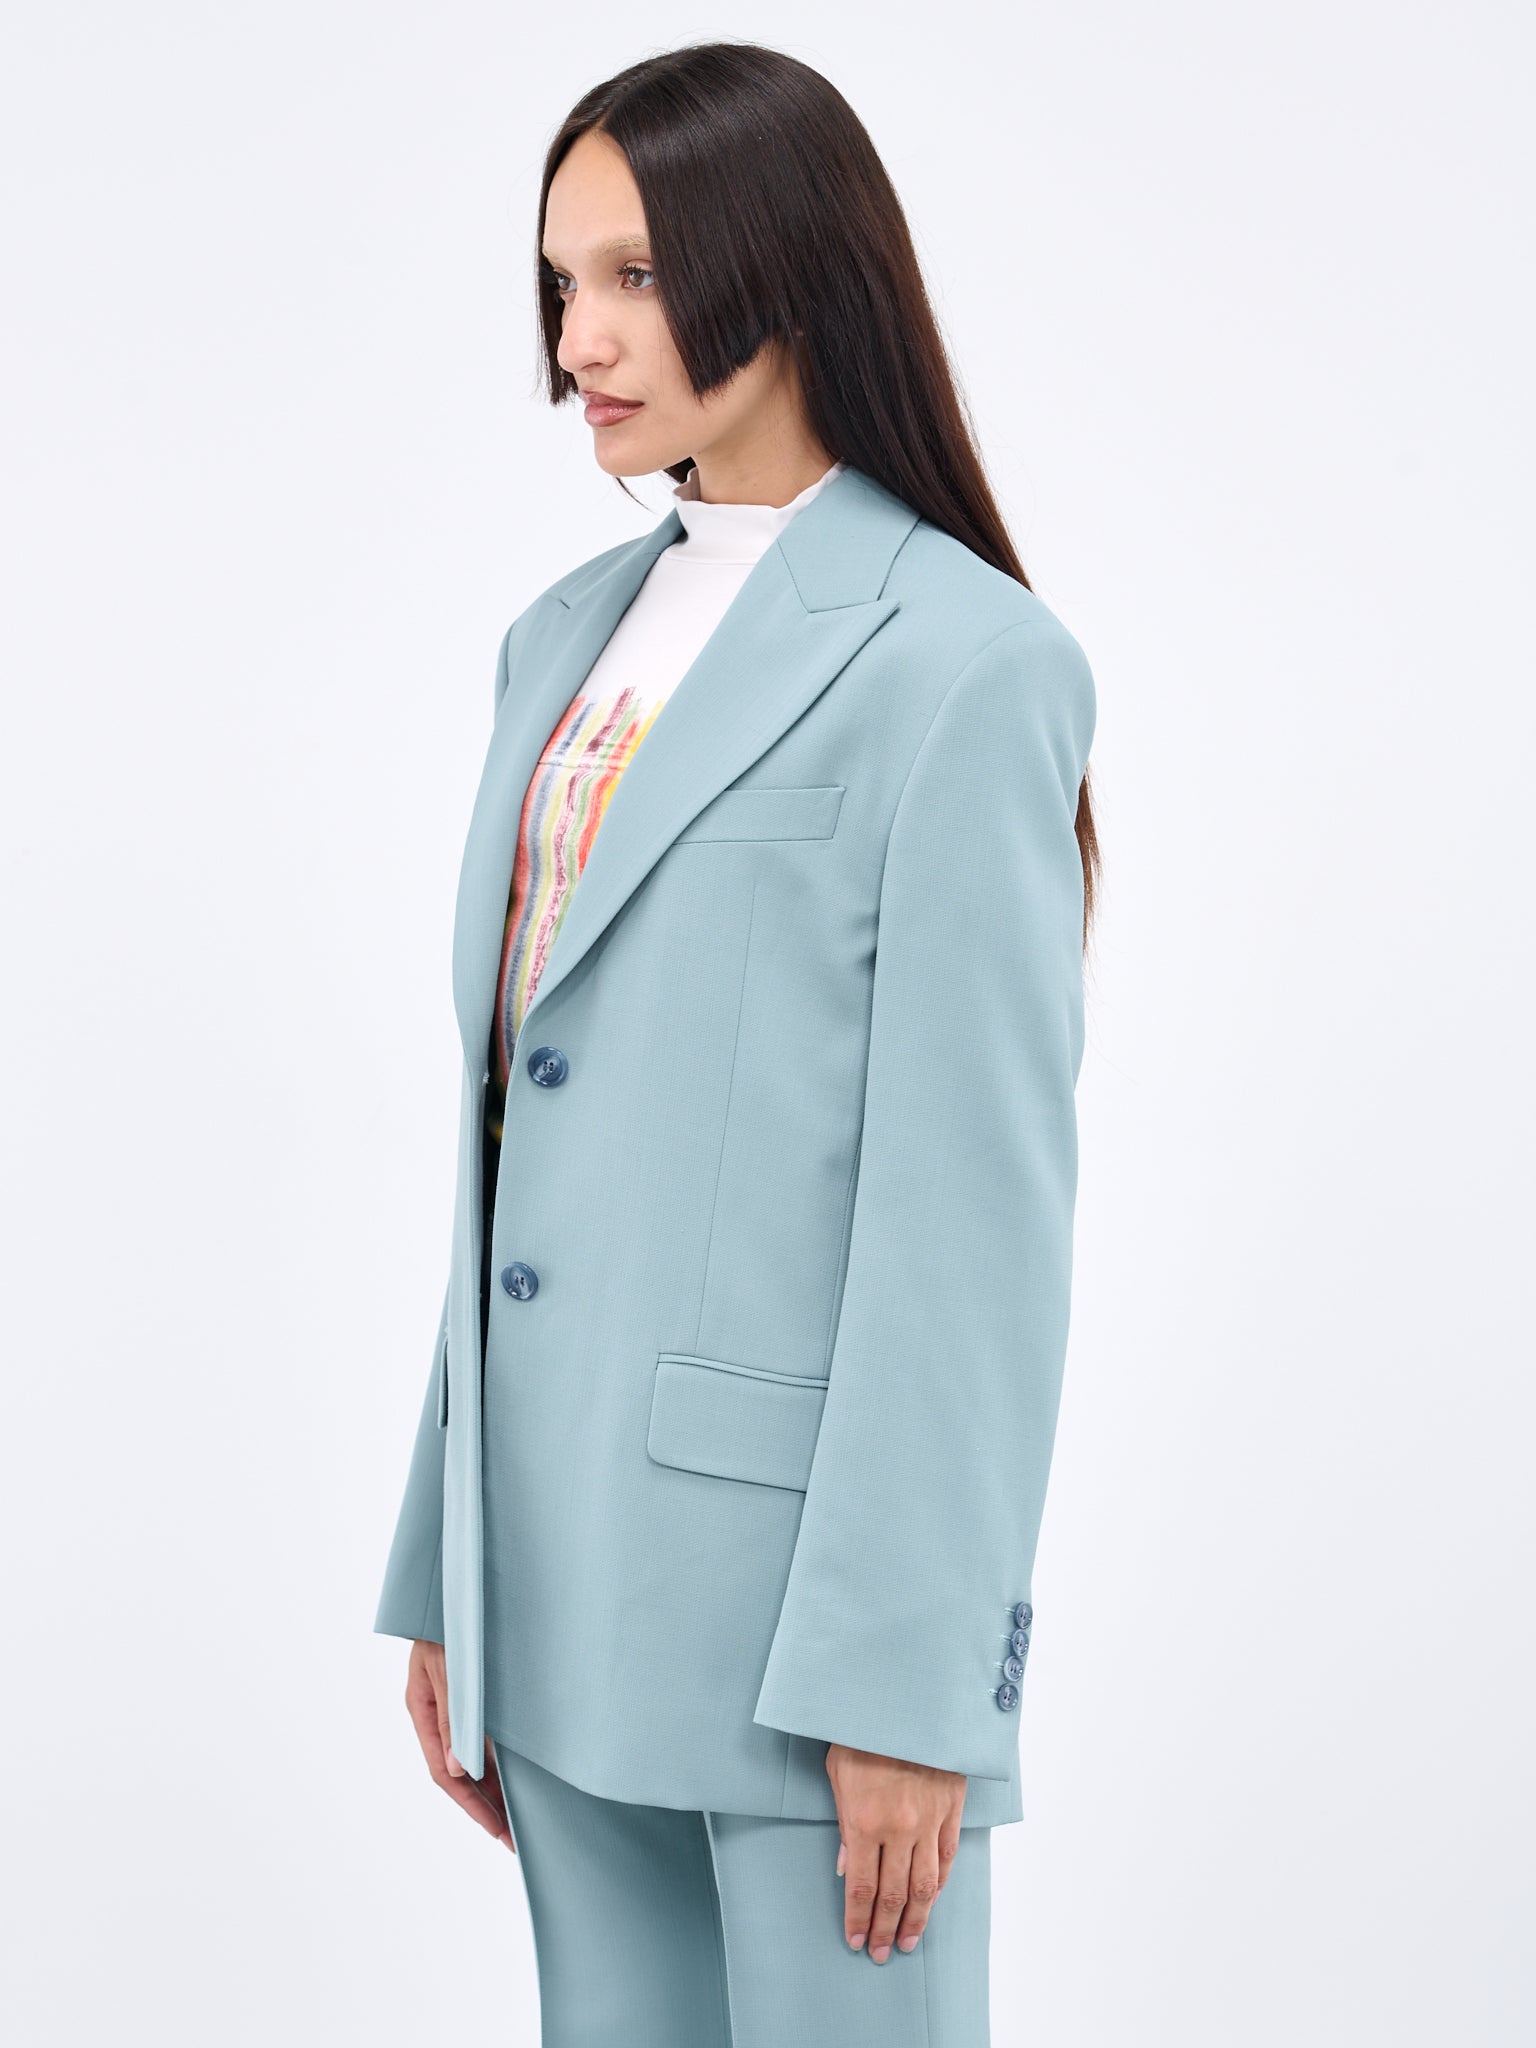 Suit Jacket (SUIT000508-AQUA-BLUE)